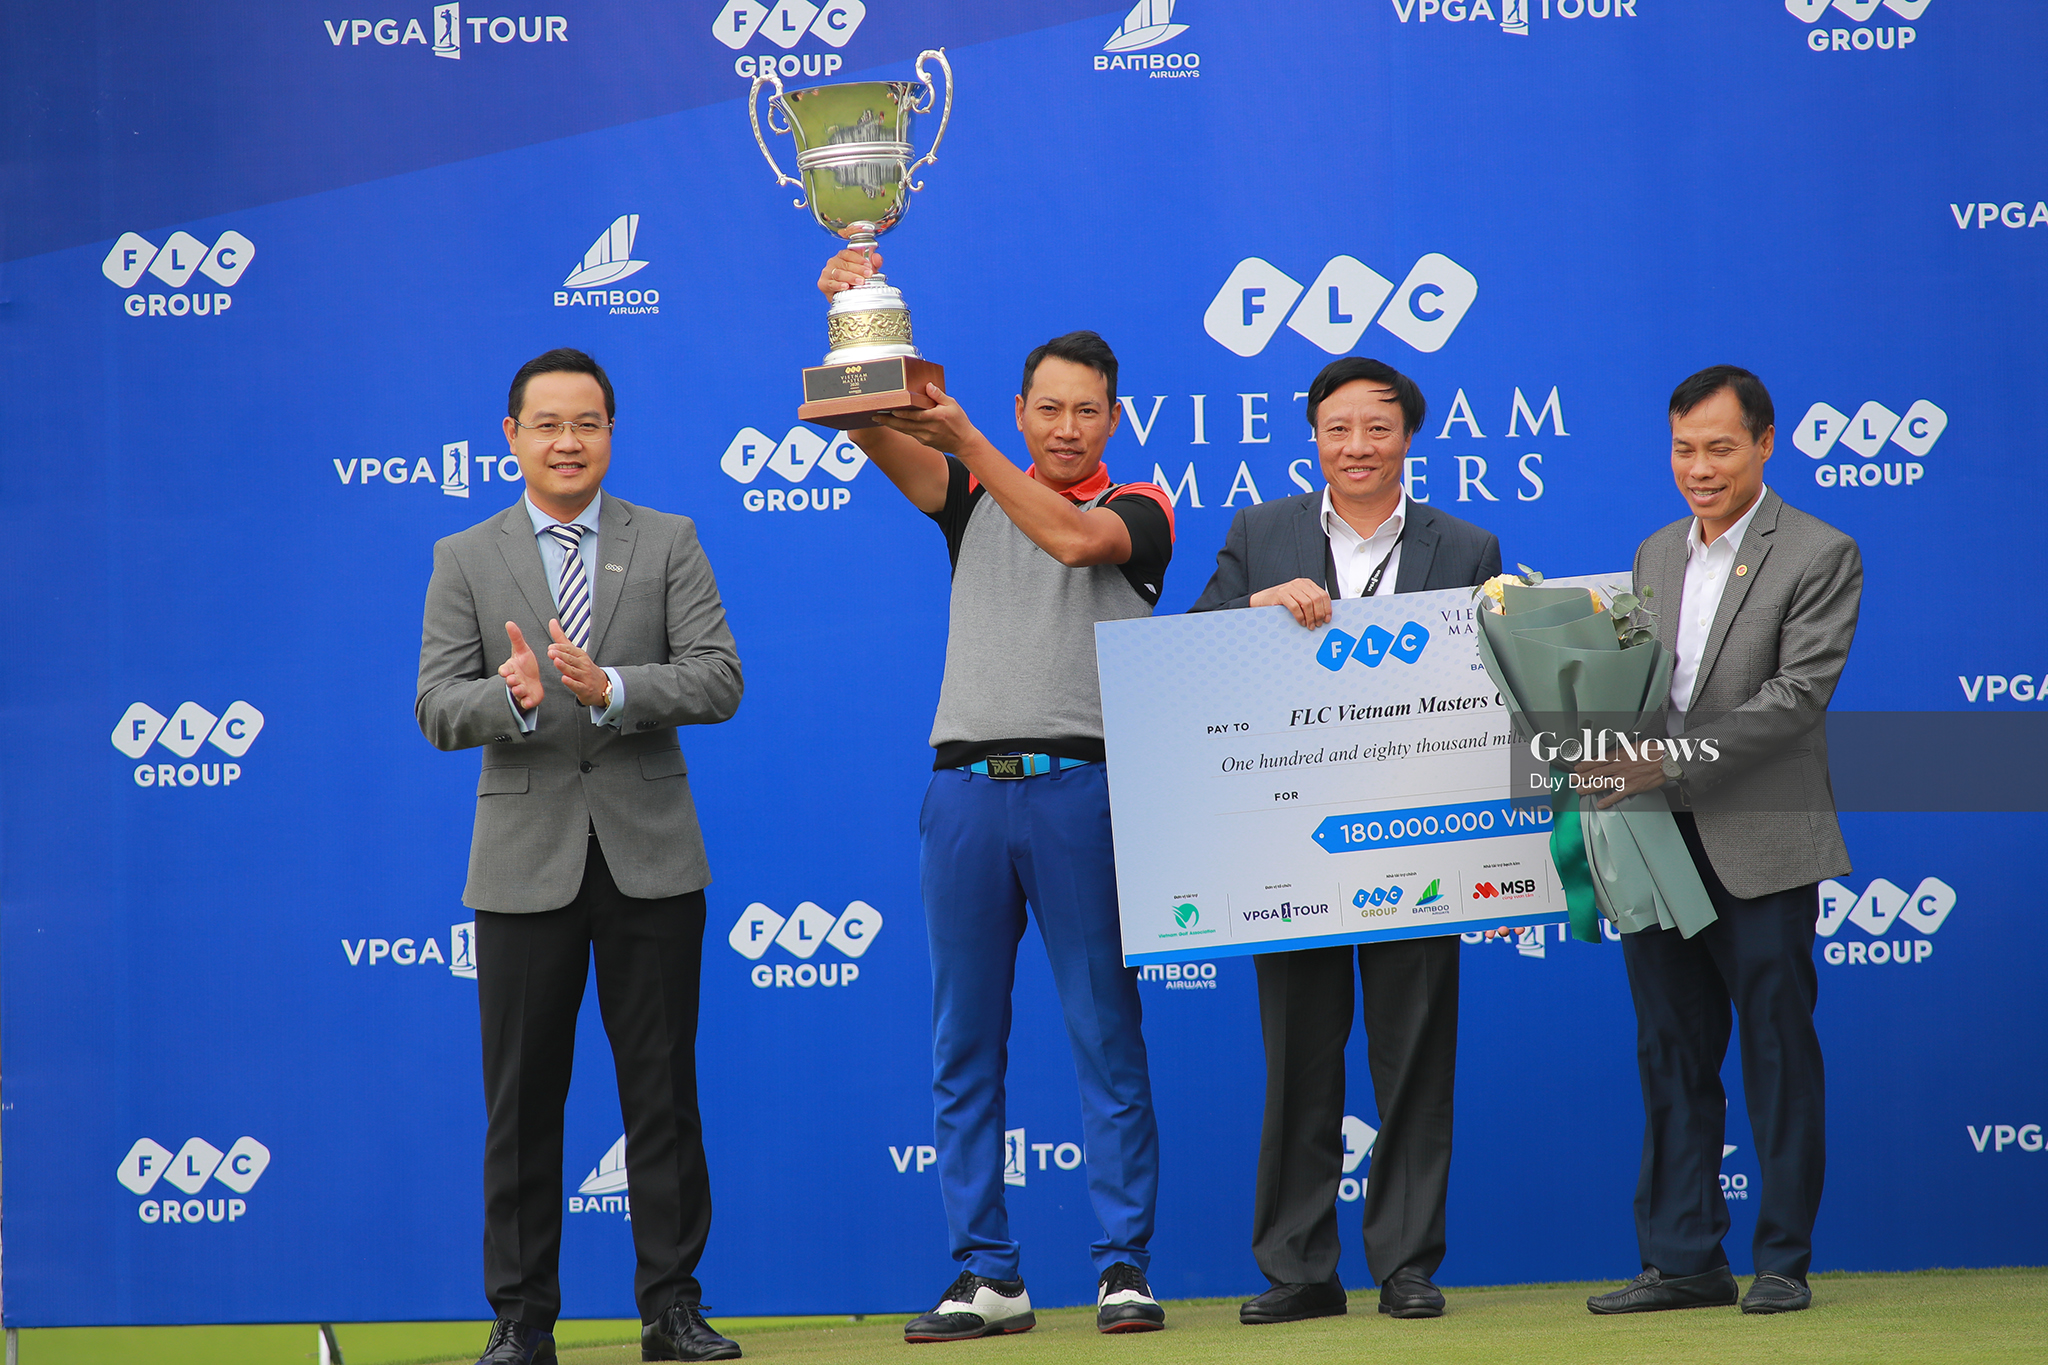 Đỗ Hồng Giang vô địch FLC Vietnam Masters 2020 Presented by Bamboo Airways